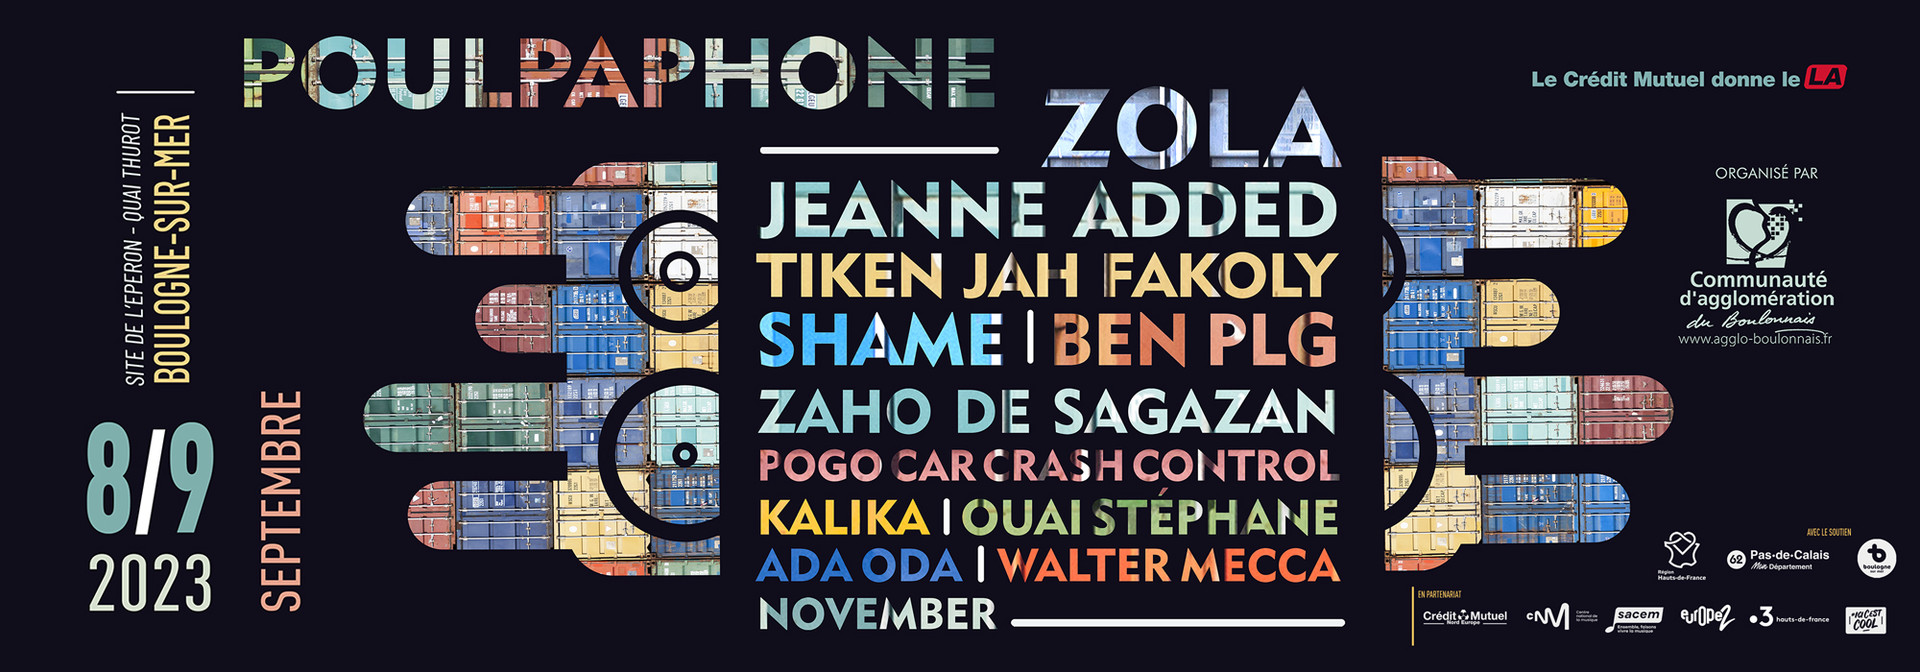 Affiche festival poulpaphone 2023